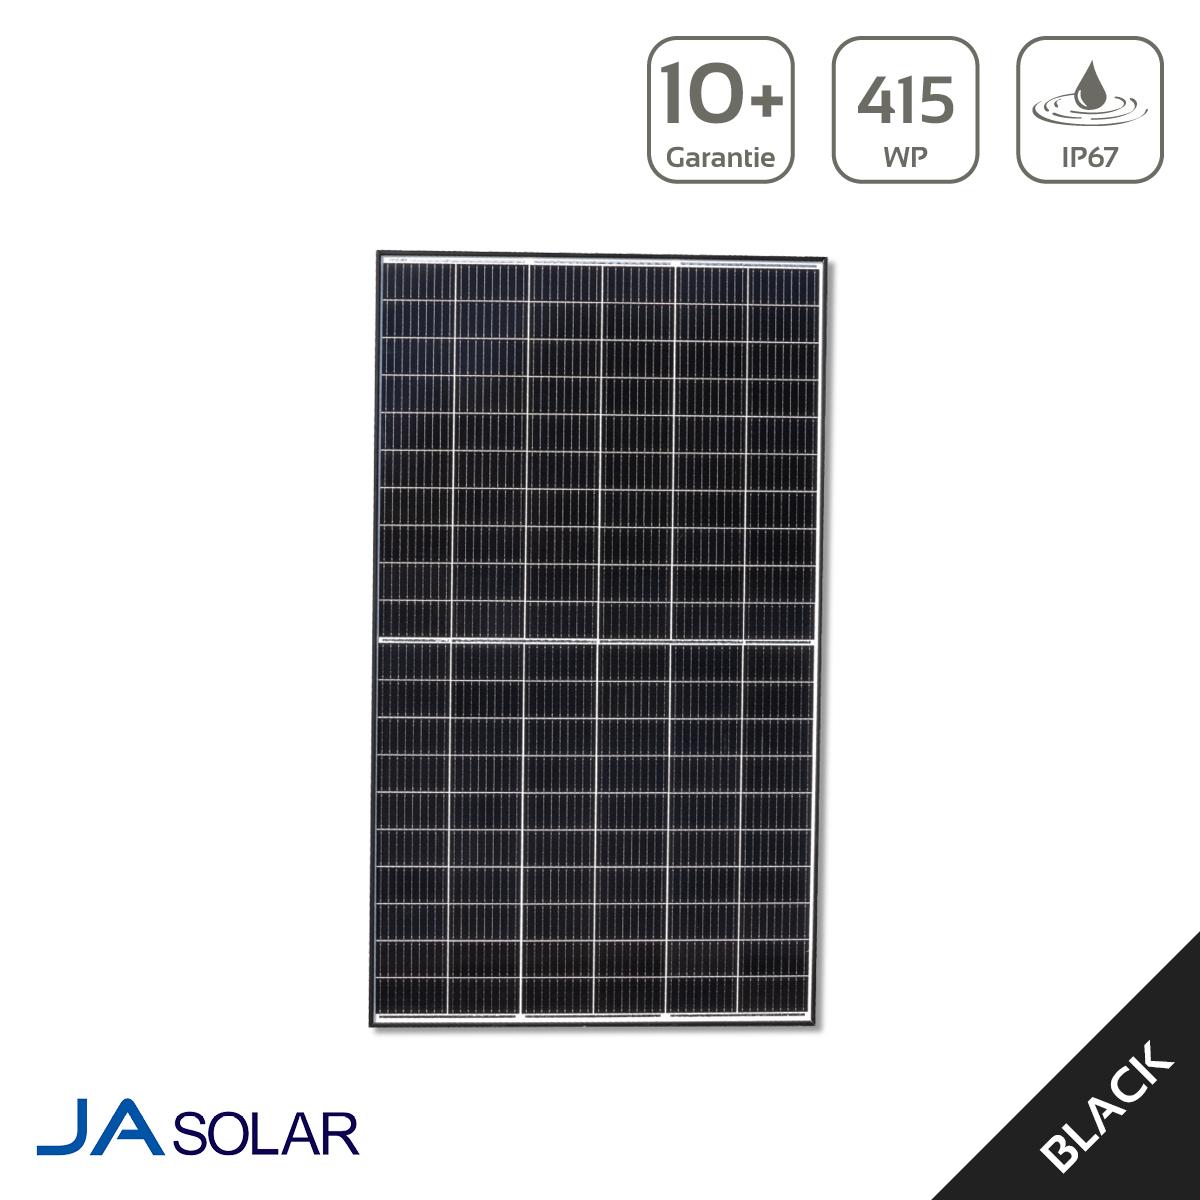 JASolar 415 Watt Black Frame Photovoltaikmodul Pro JAM54S30 415 GR-BF - MwSt: 19% für Geschäftskunden